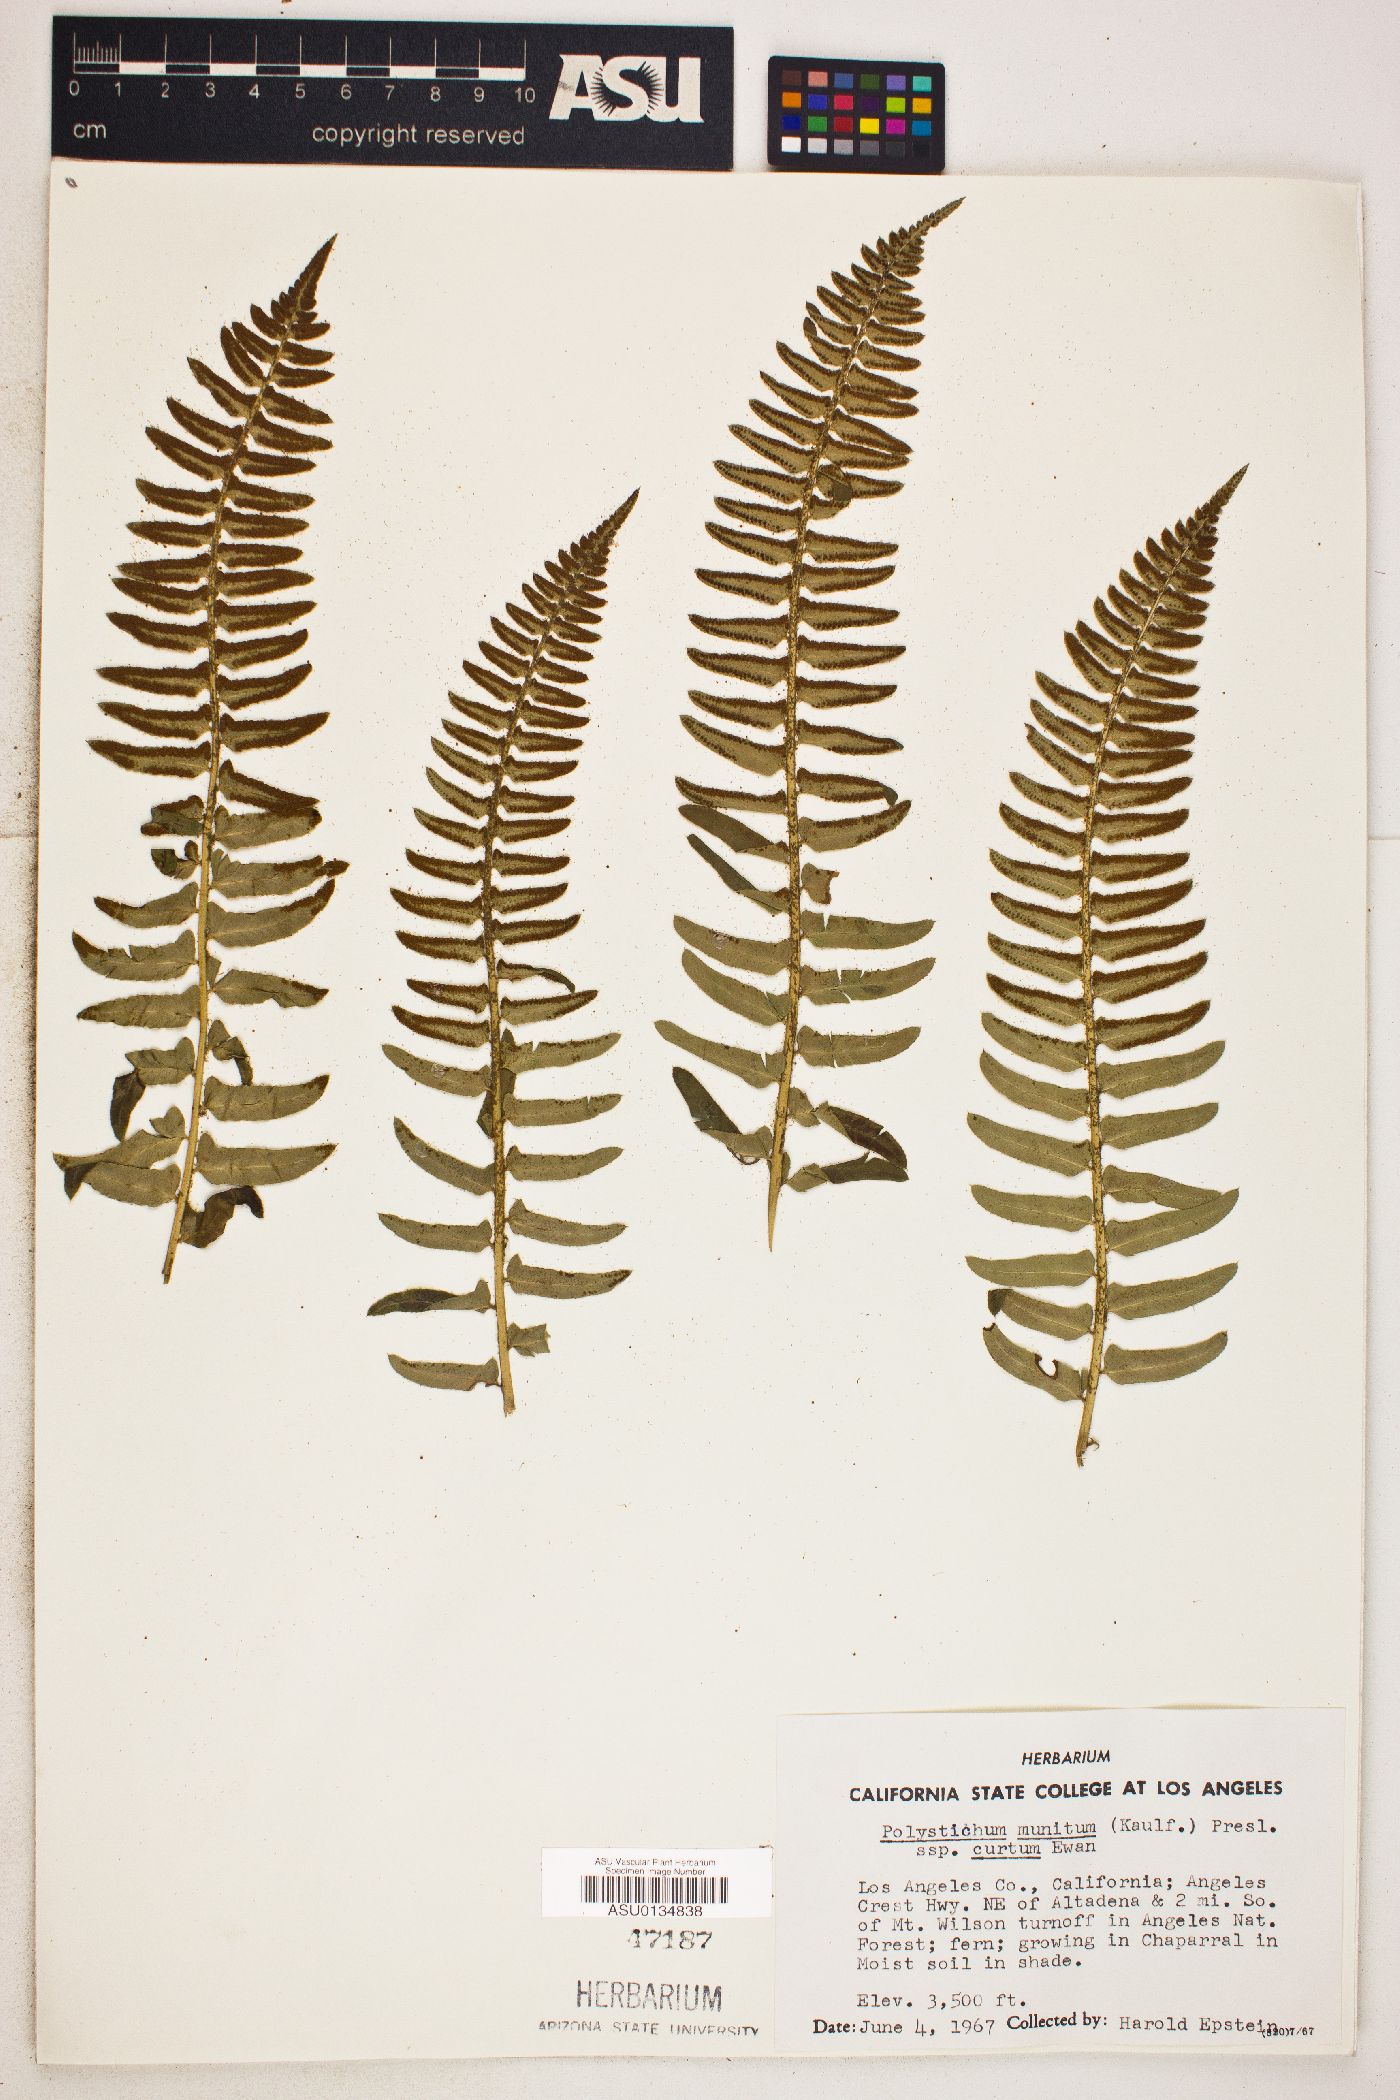 Polystichum munitum subsp. curtum image